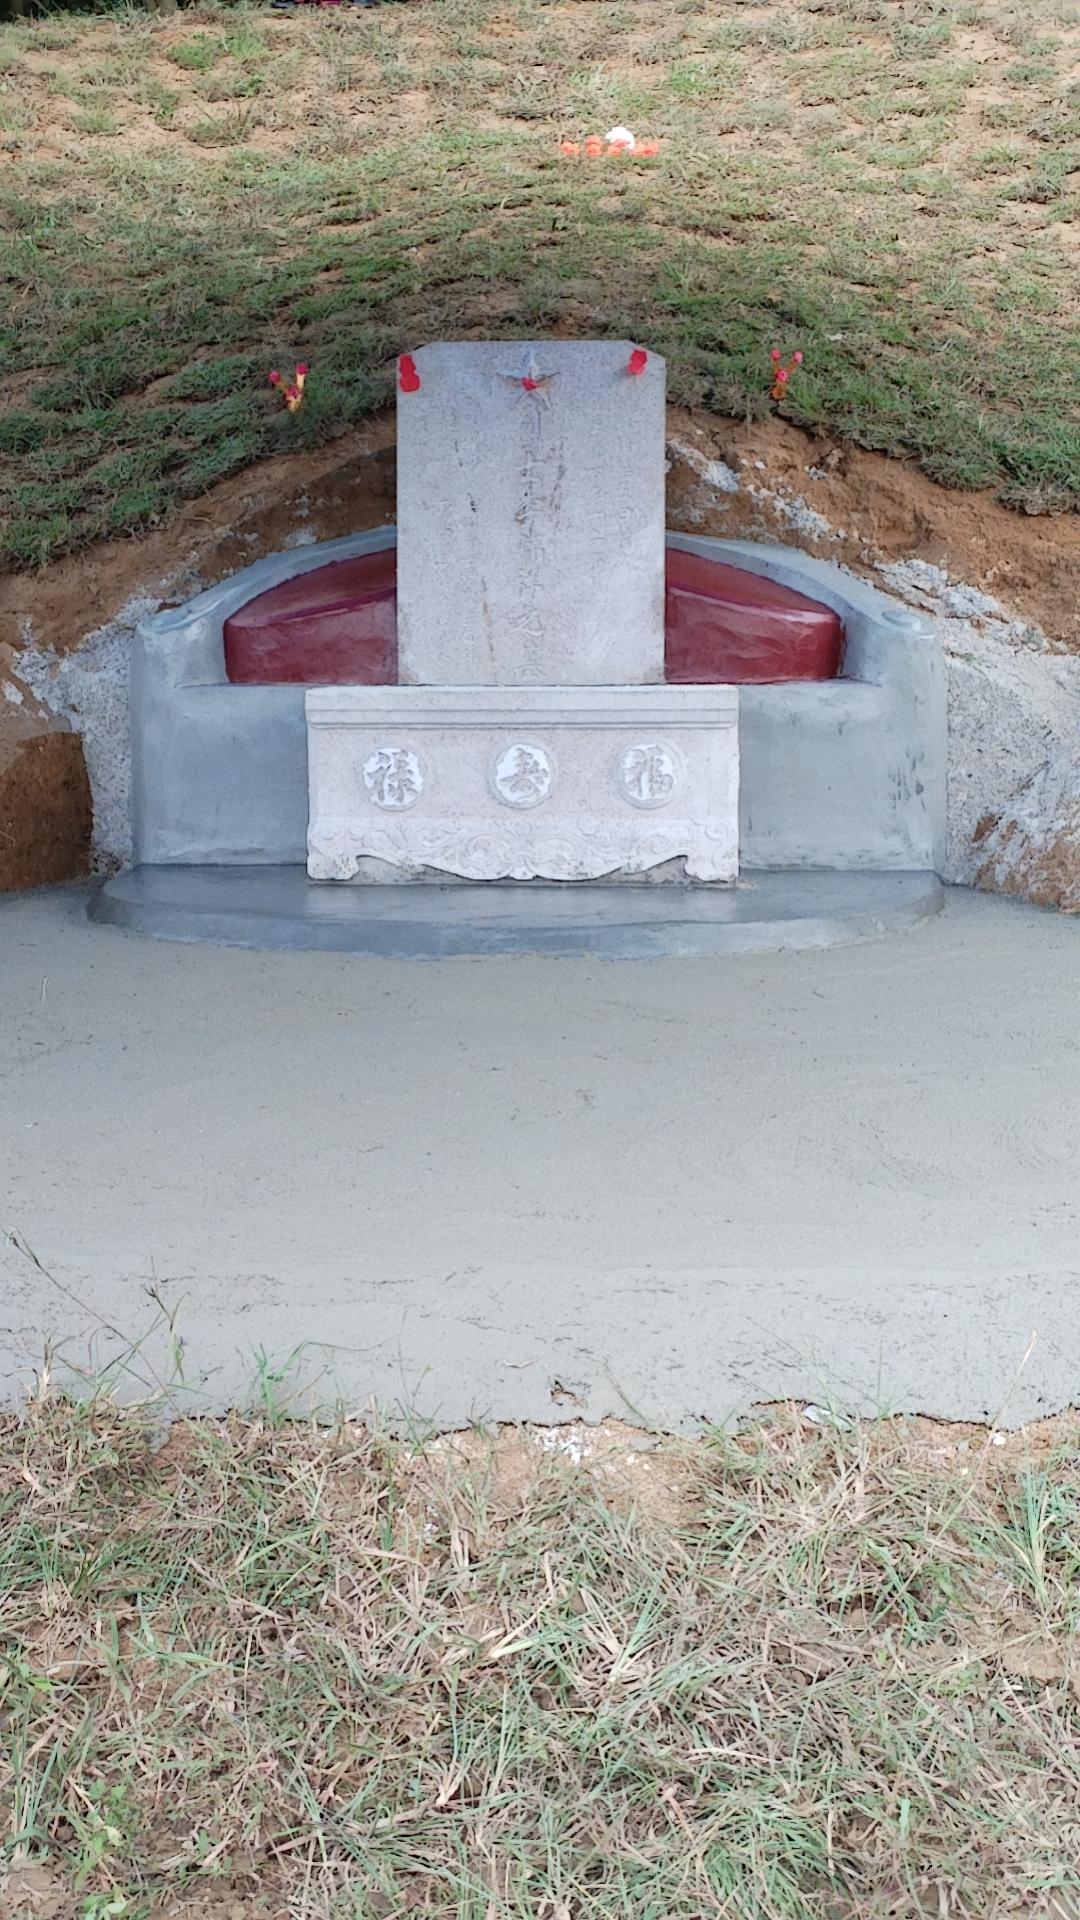 新建烈士墓碑疑因“挡风水”遭破坏续：墓碑已原地重建